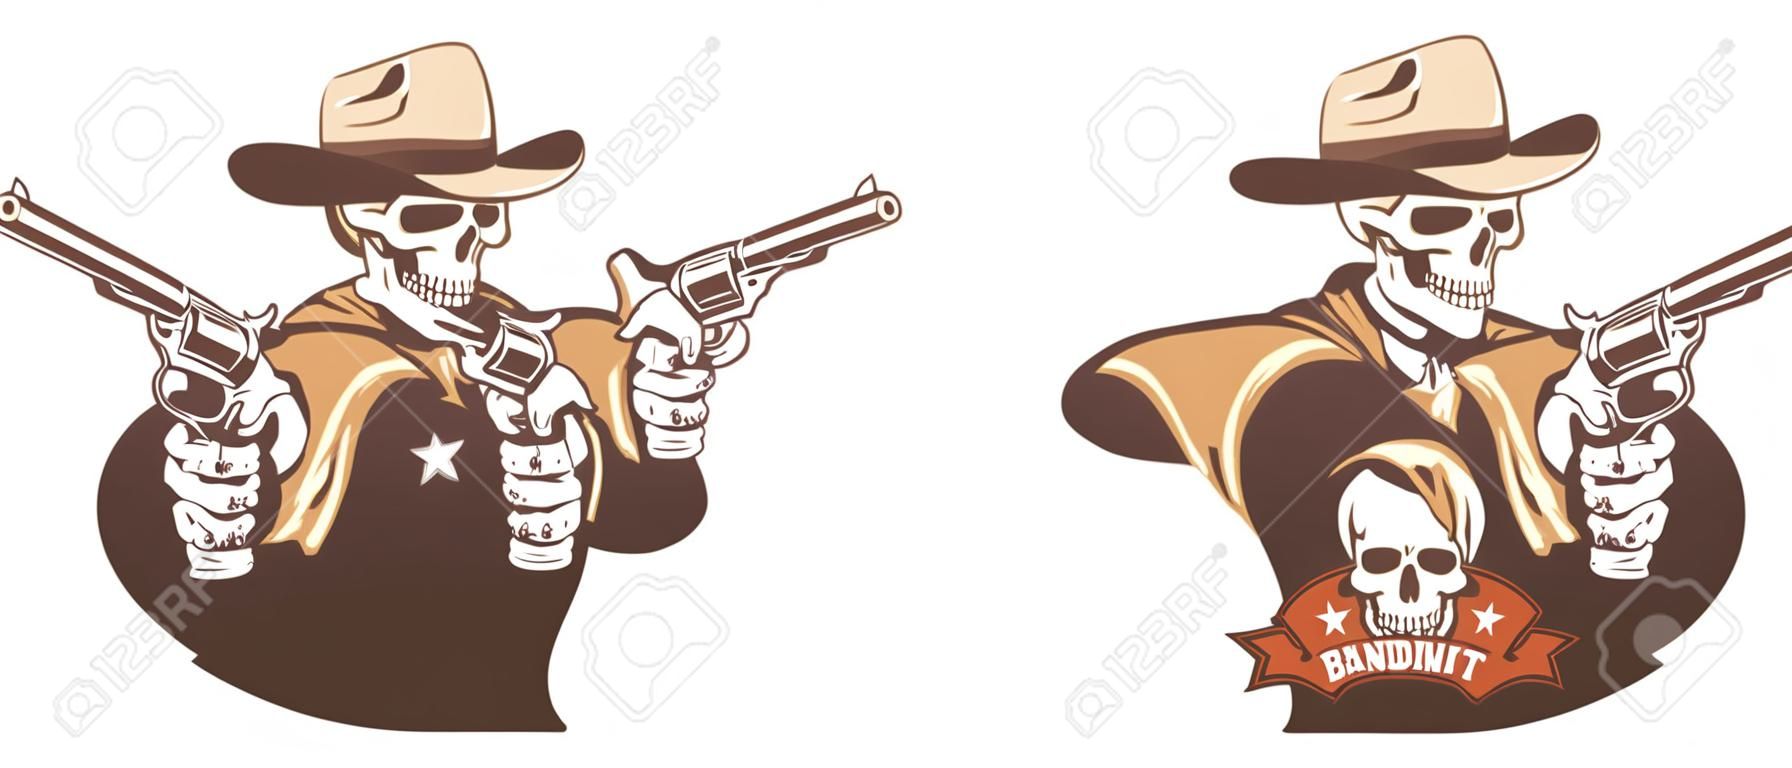 Schedel cowboy western bandiet met geweren